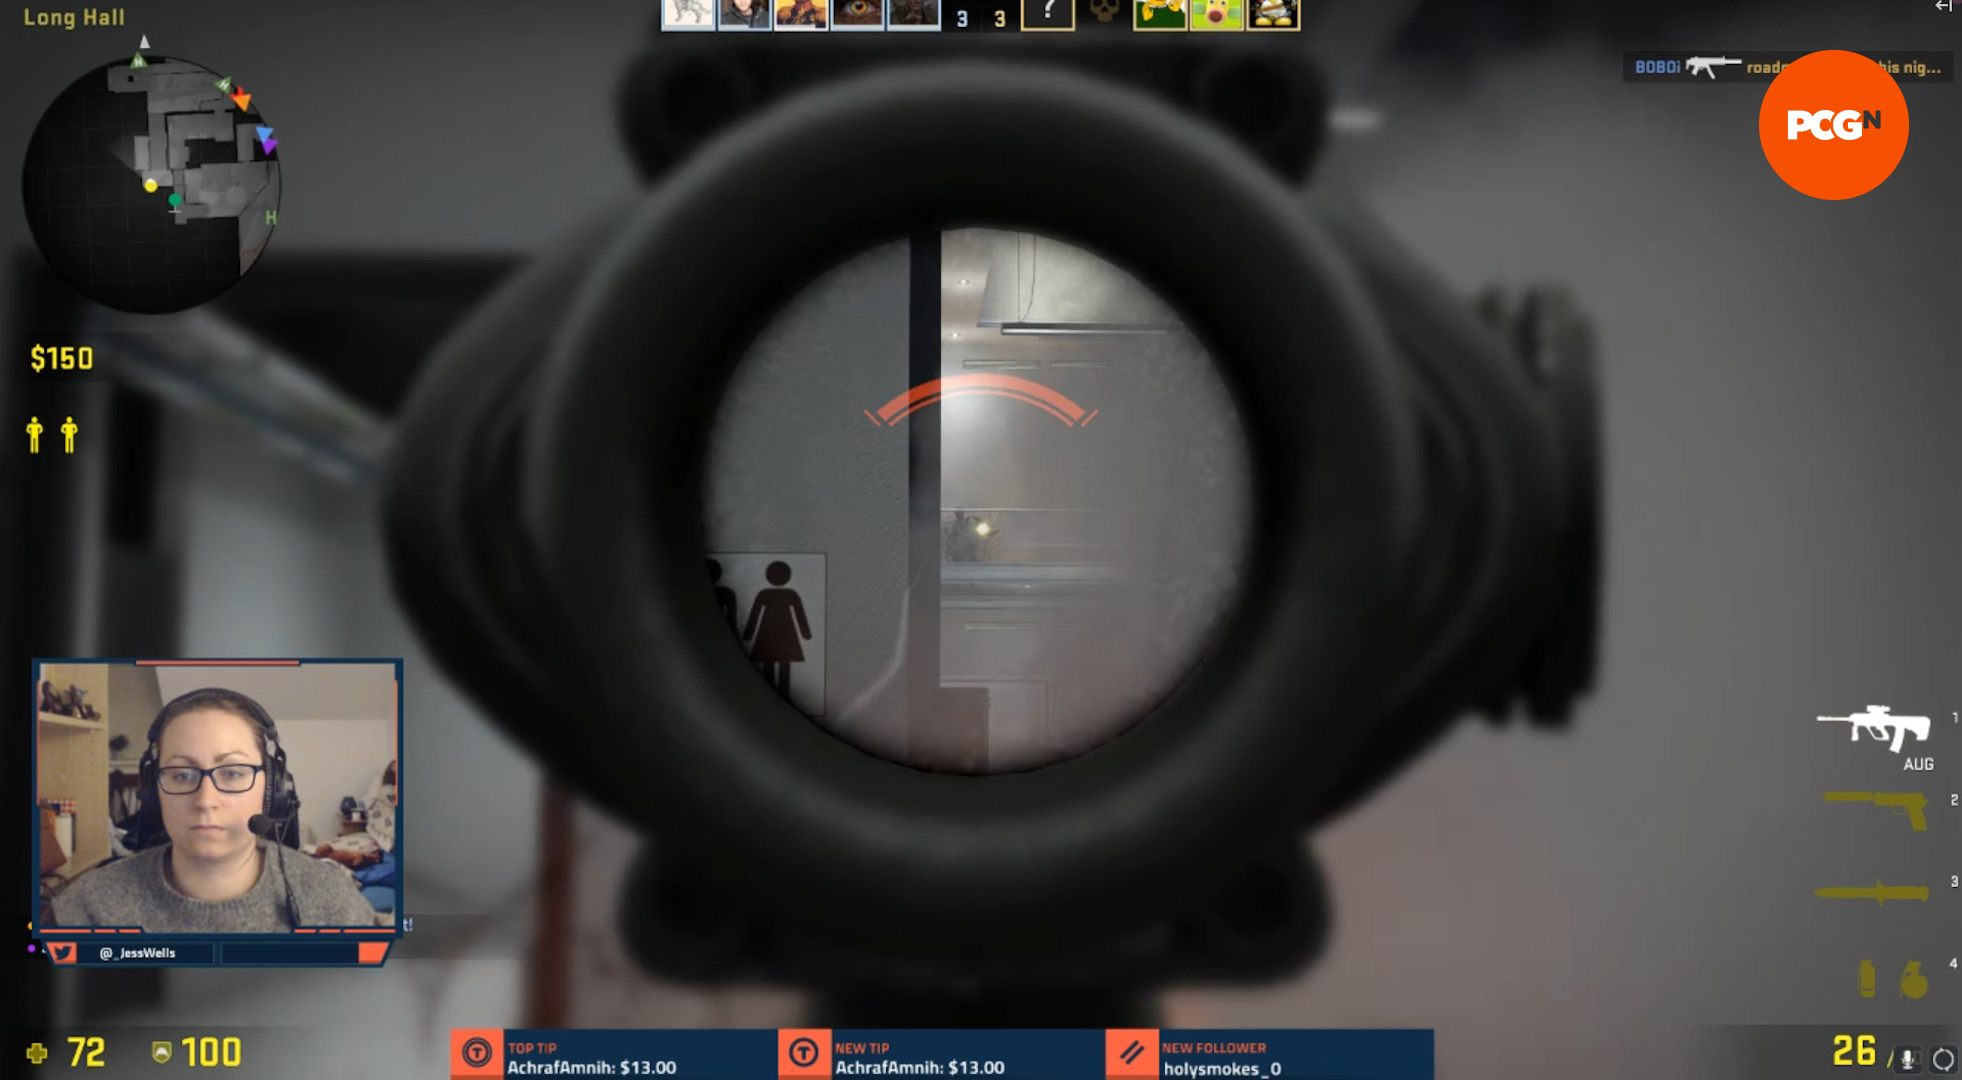 Vue de la webcam Logitech C920 HD Pro dans un jeu PC